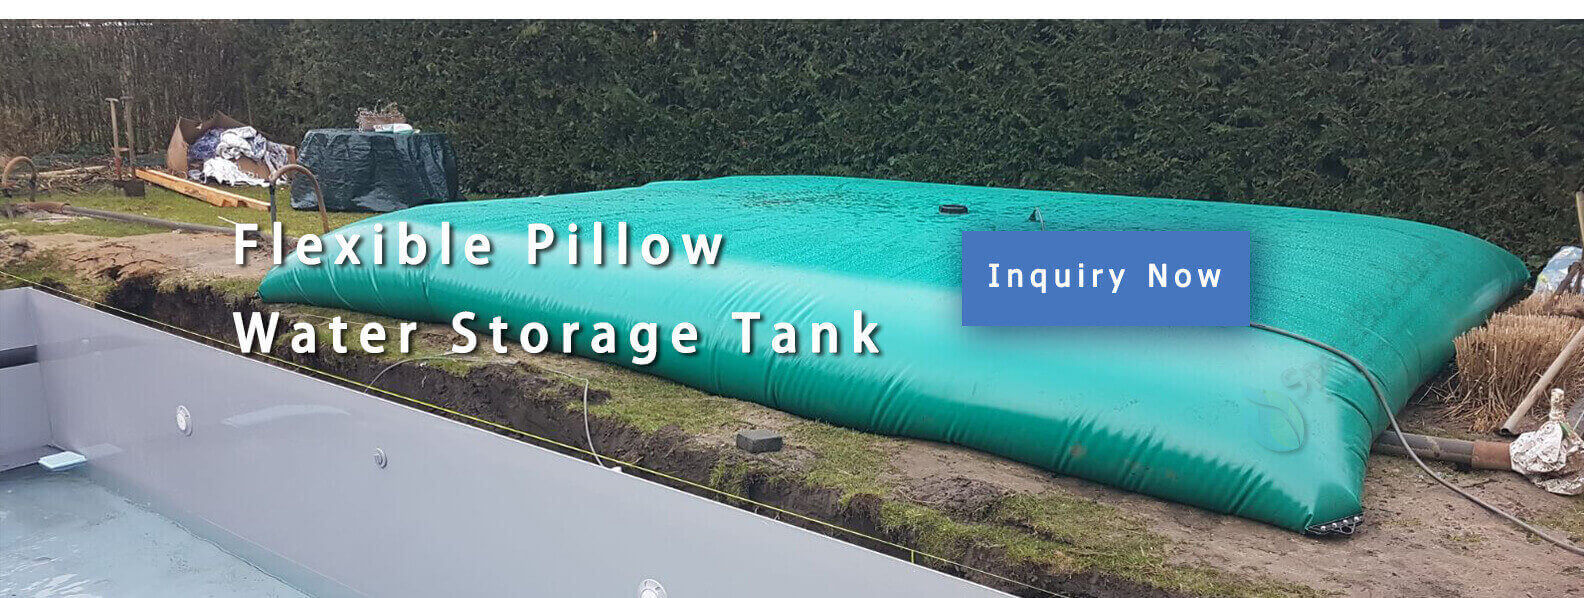 Flexible Pillow Water Storage Tank